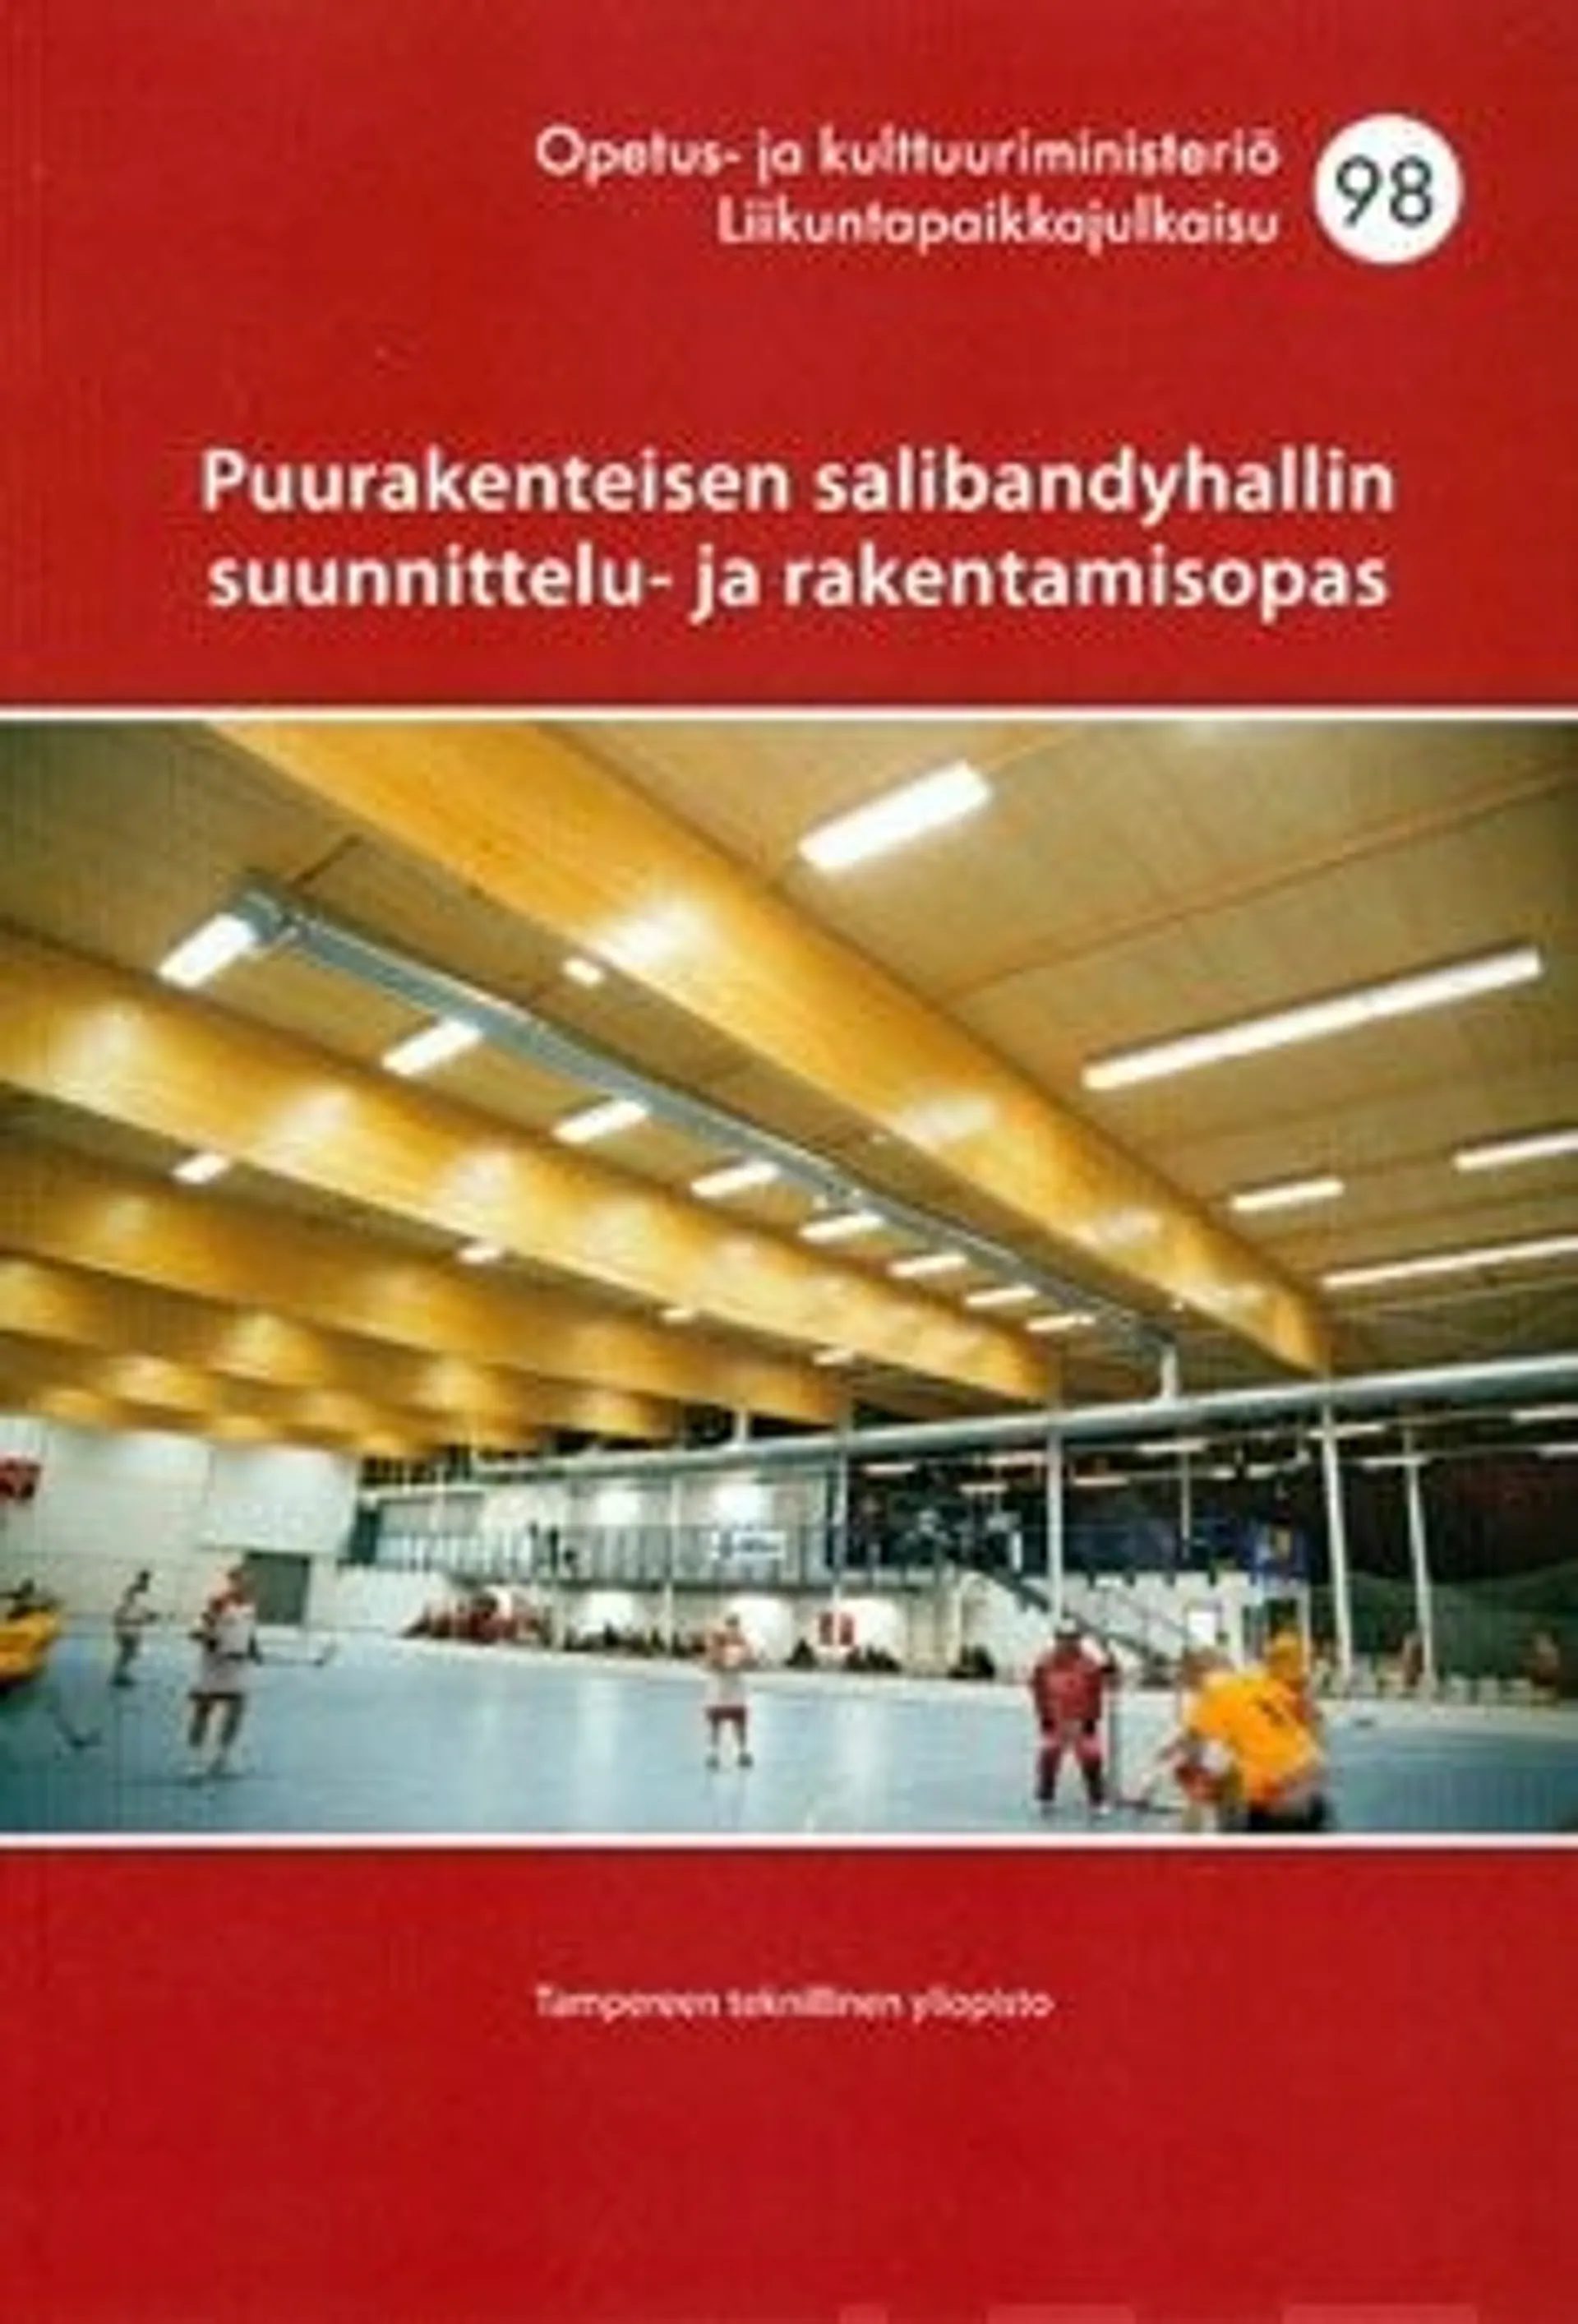 Tampereen teknillinen yliopisto, Puurakenteisen salibandyhallin suunnittelu- ja rakentamisopas